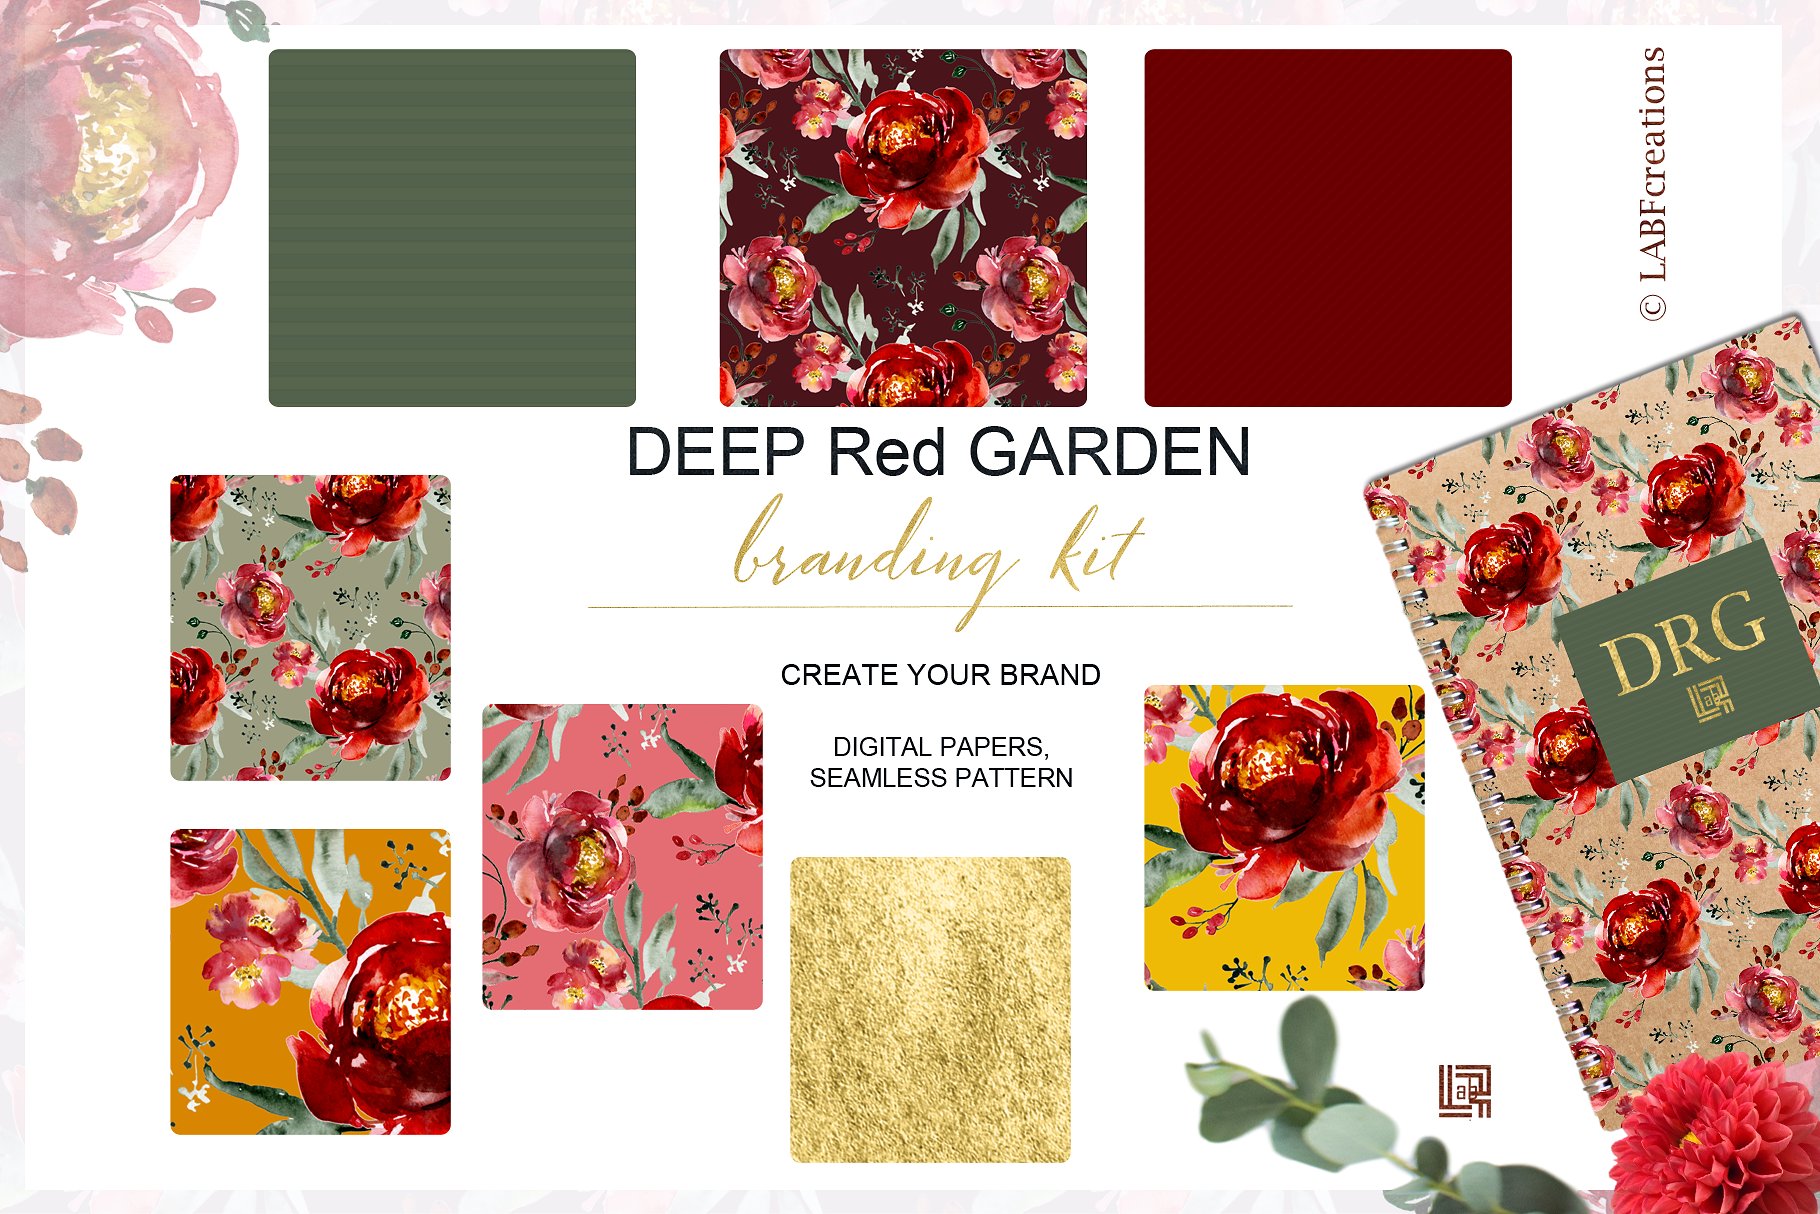 深红色的玫瑰牡丹花圈品牌图案合集 Crimson Rose Peony Wreath Brand Pattern Collection插图2